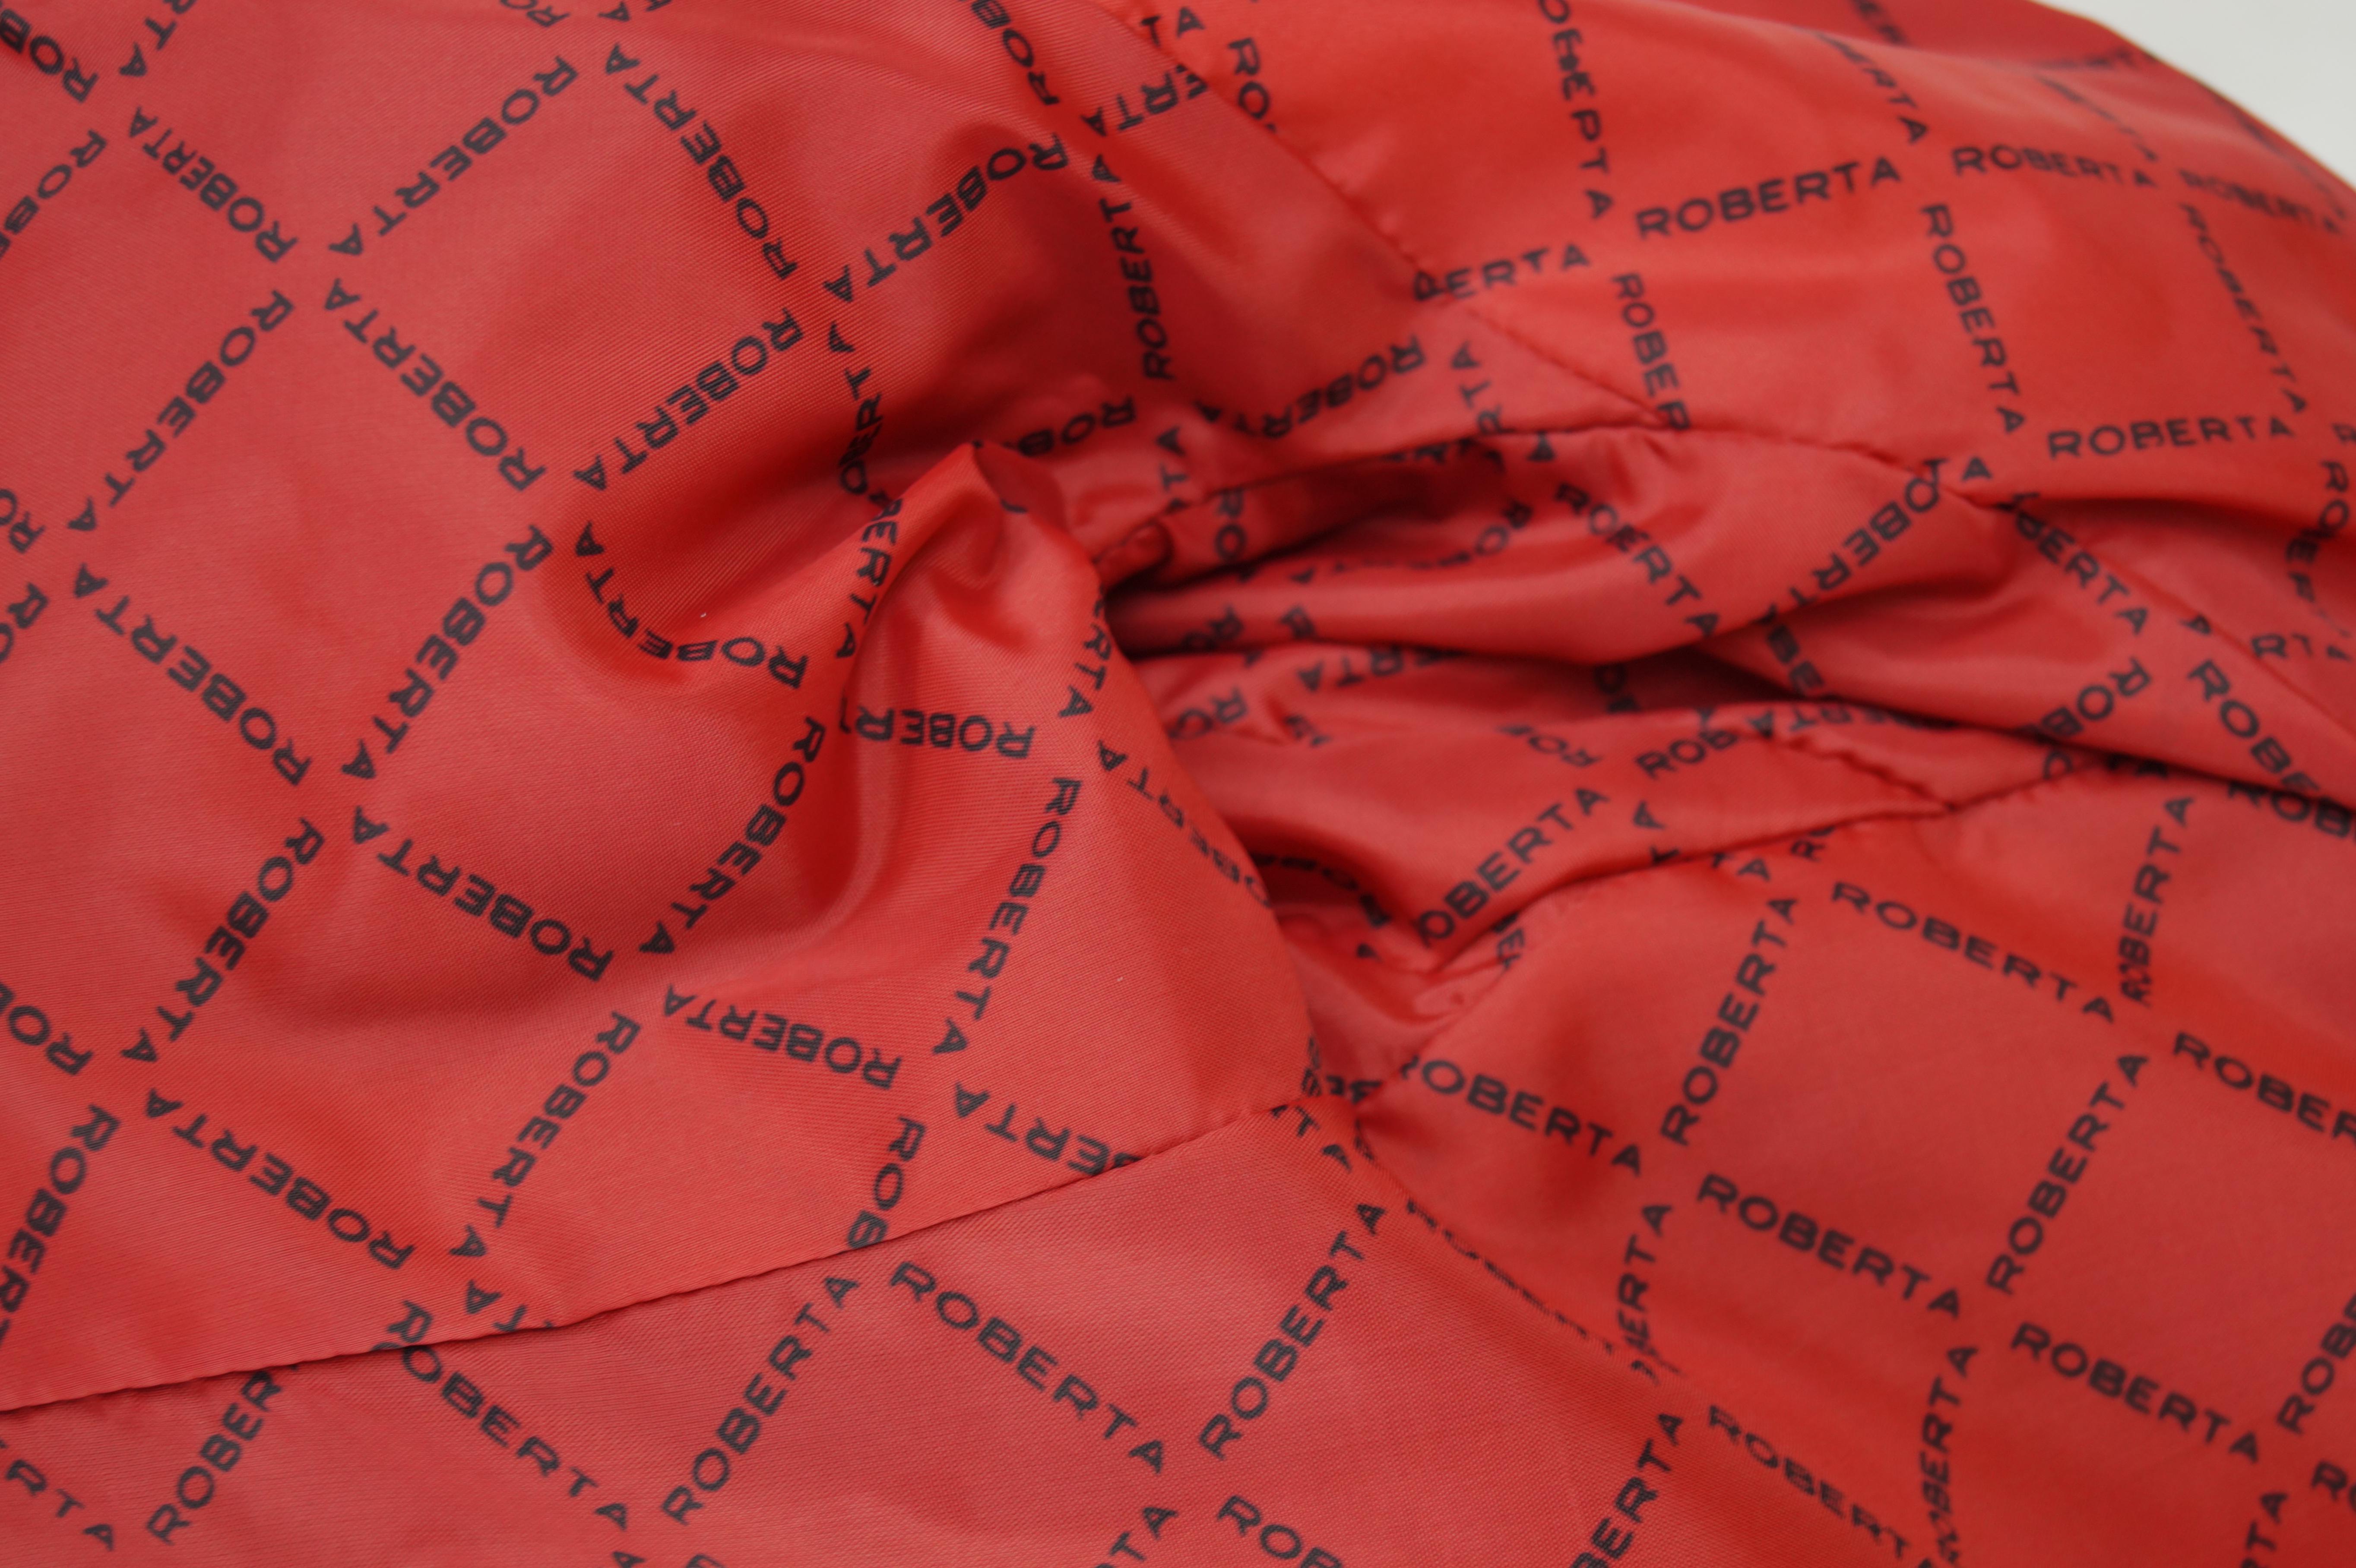 Roberta di Camerino velvet red coat vintage 70s For Sale 5